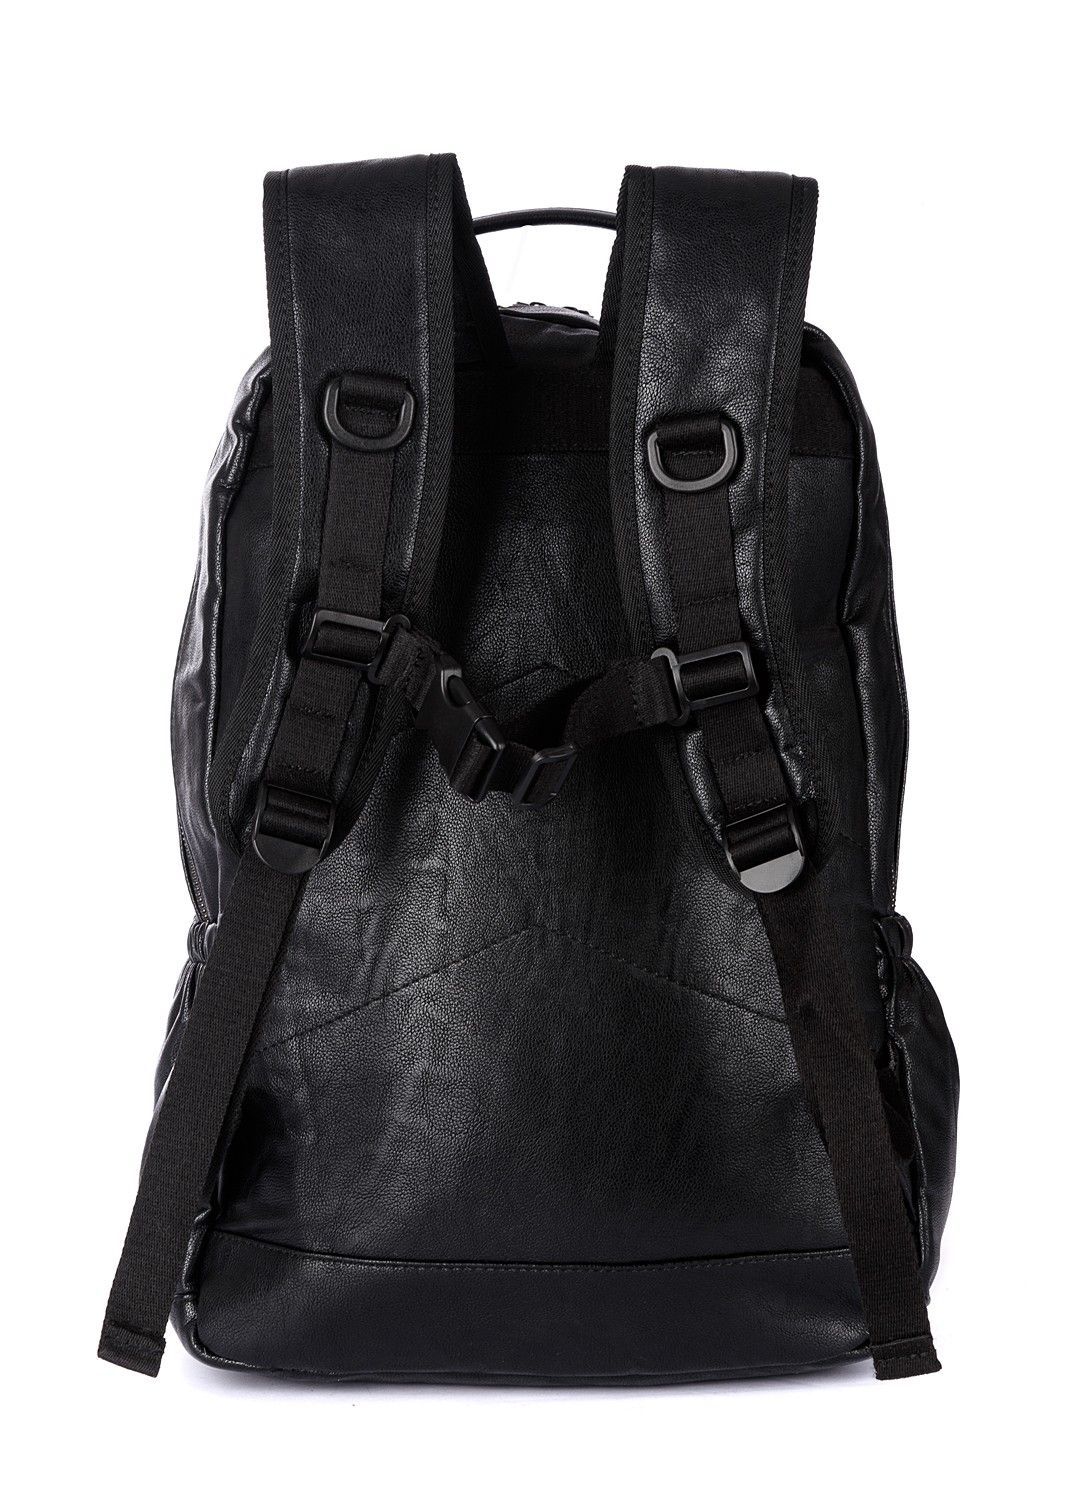 Рюкзак женский городской из искусственной кожи, черный, с широкими лямками, объем 26л